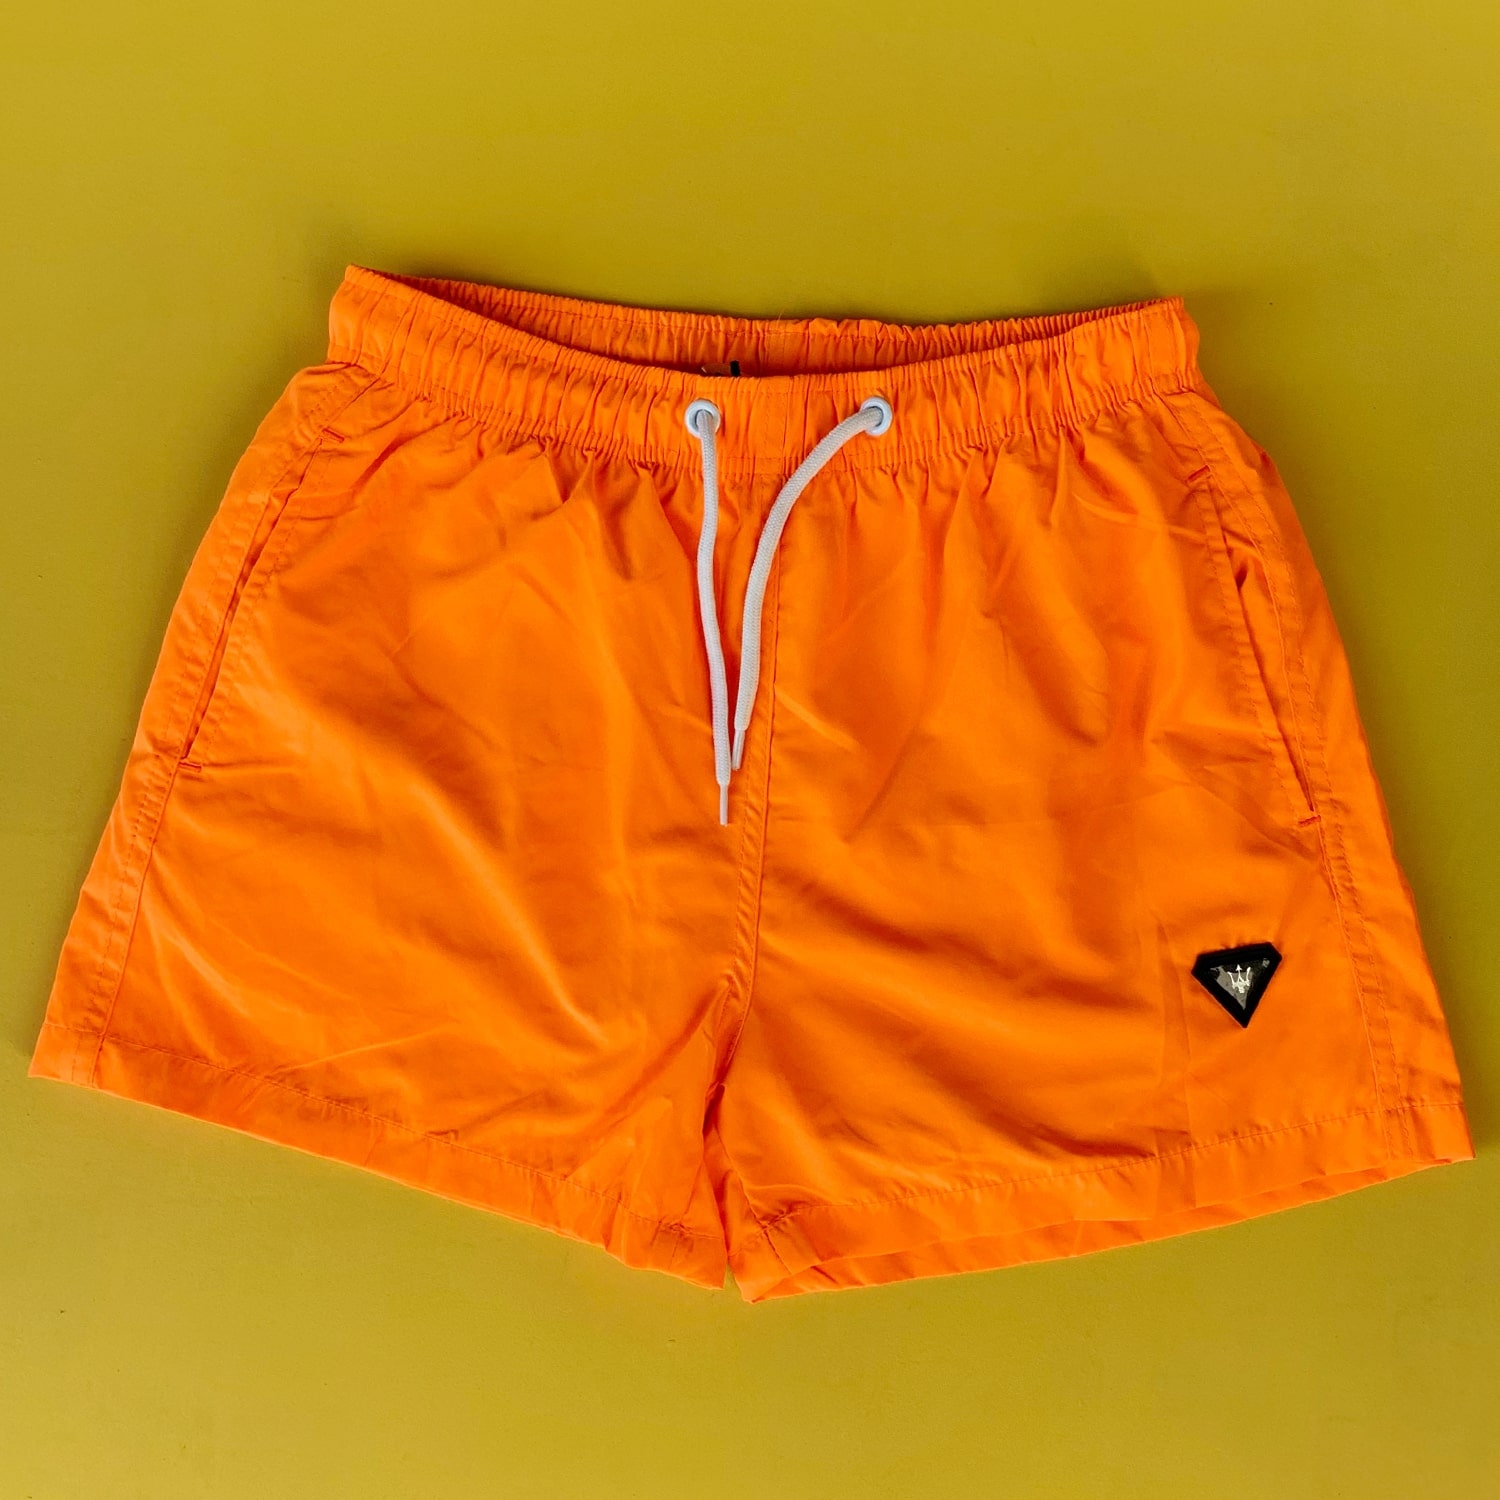 Men's Basic Short Sea Shorts With Back Pockets Orange